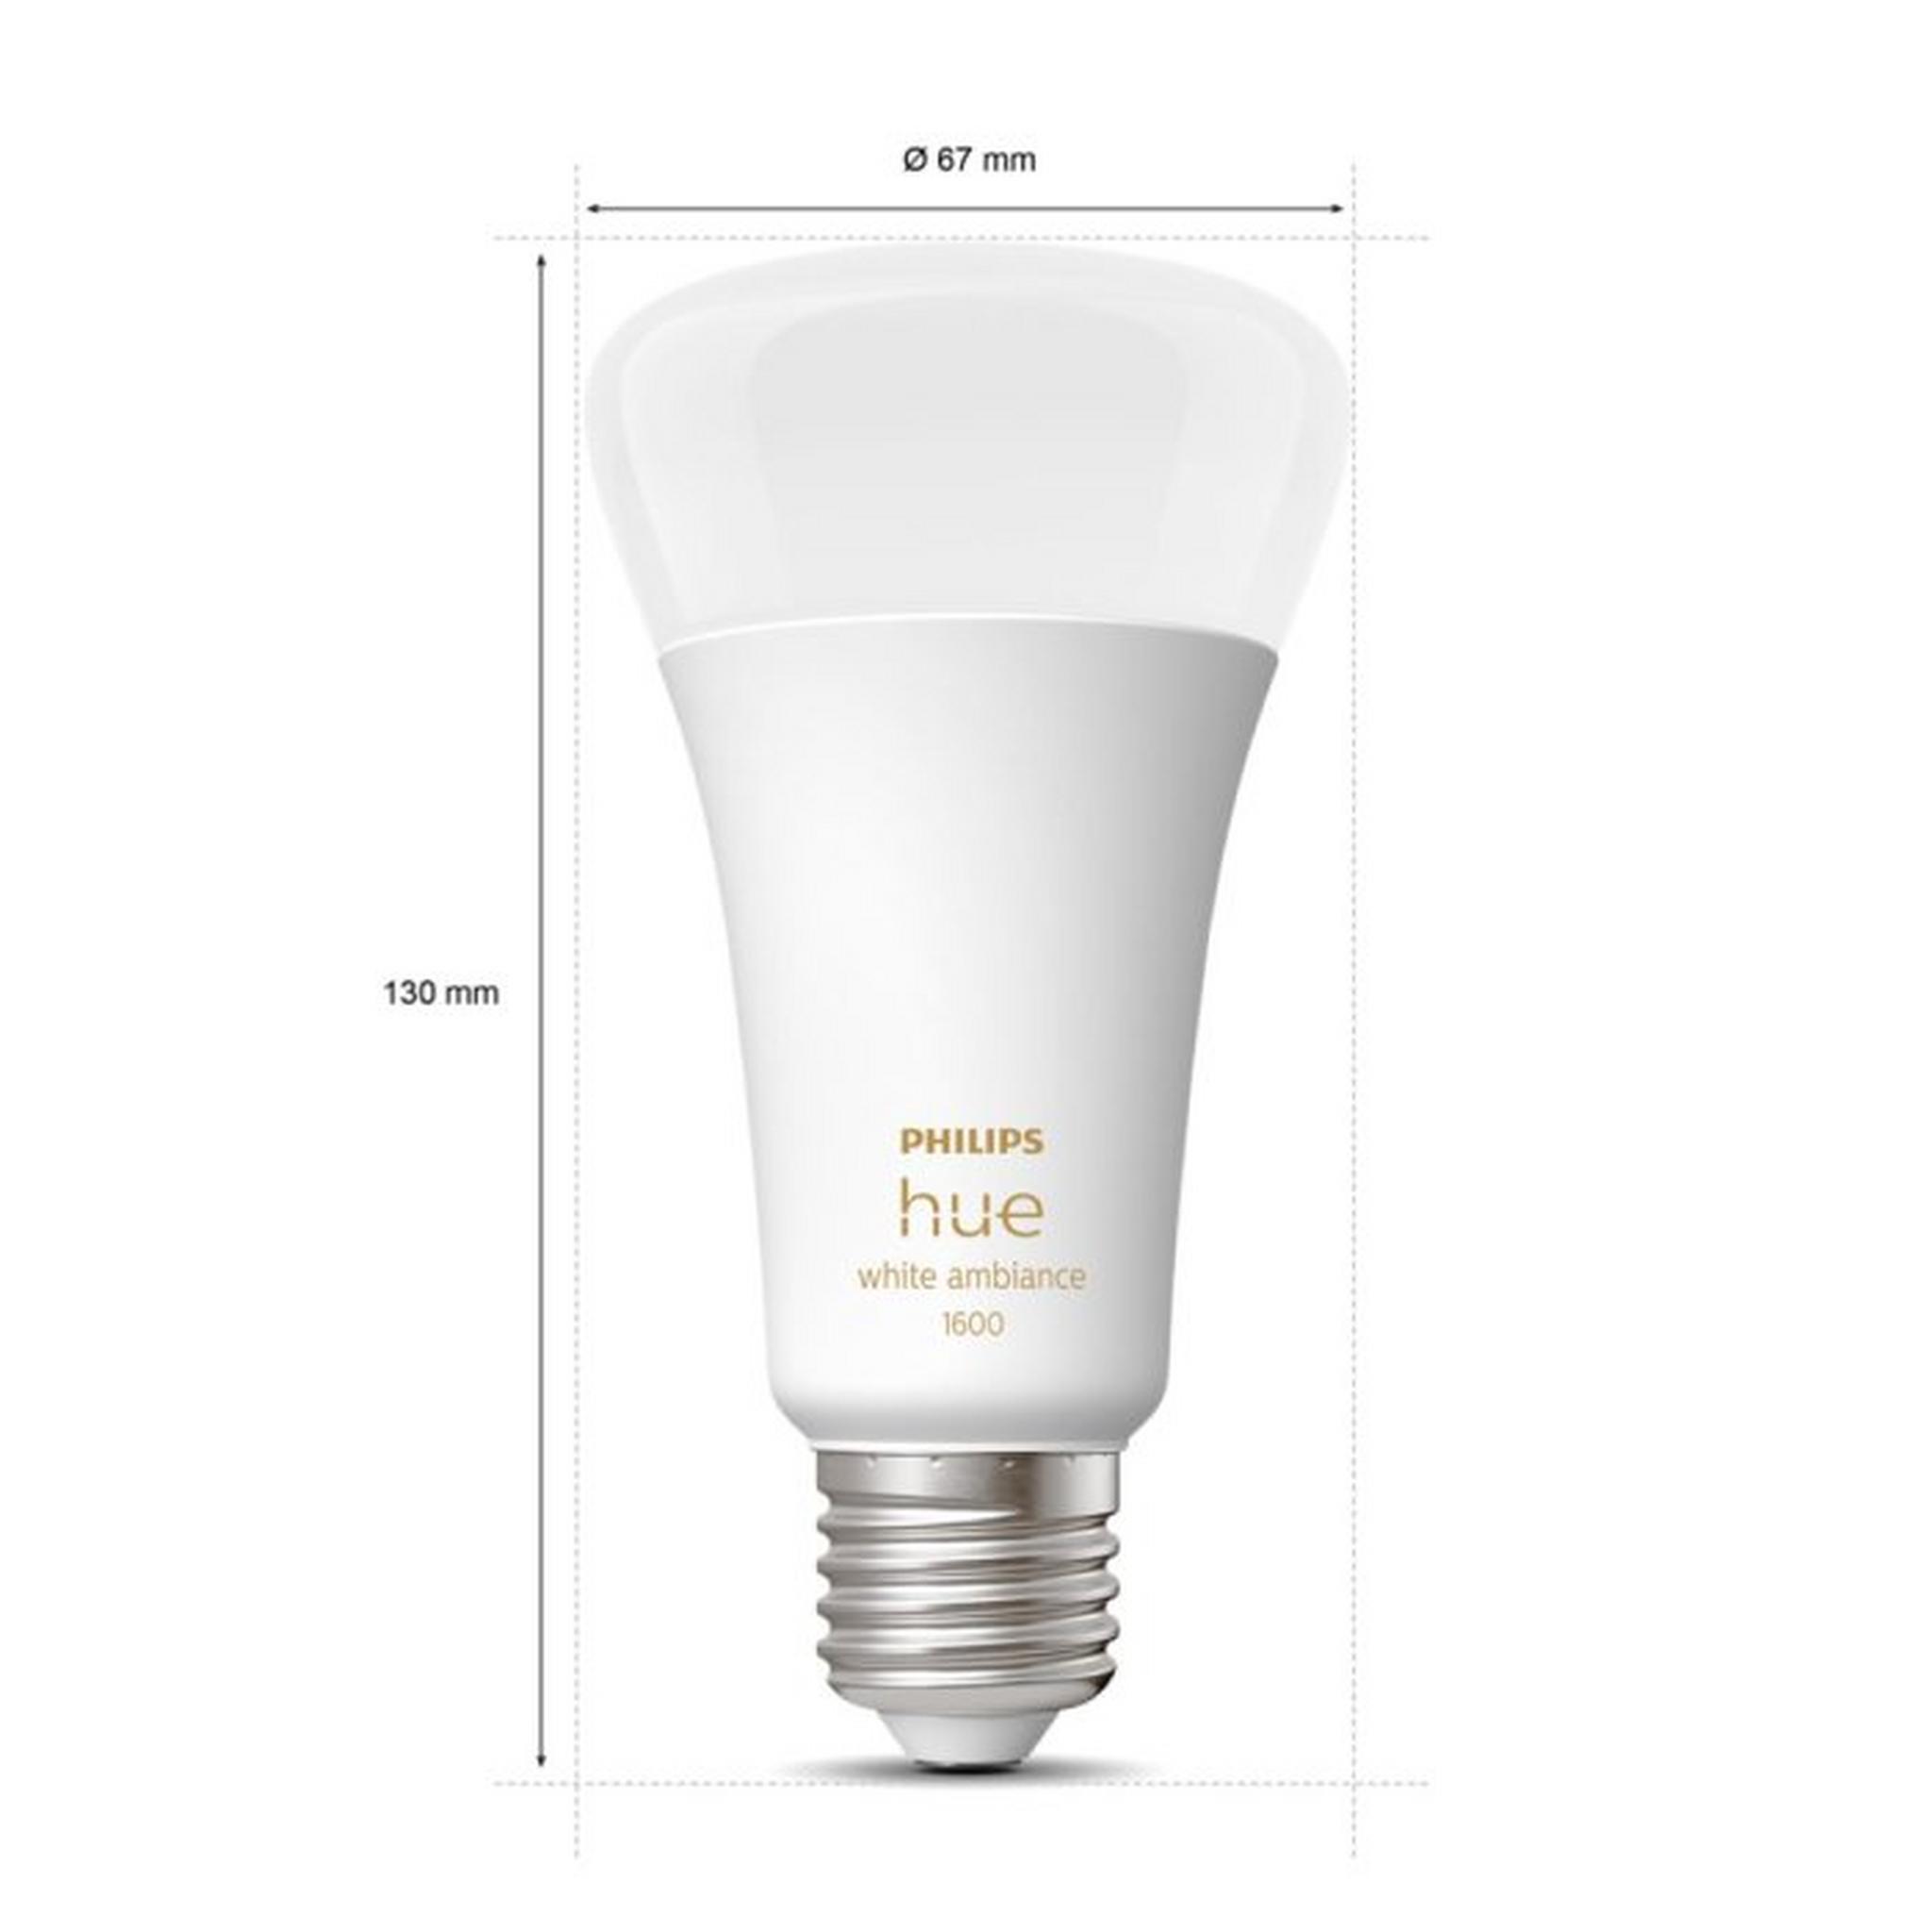 Philips Hue White Ambiance A67 E27 Smart Bulb, 13-Watt, 1600 Lumen, 929002471901 – White